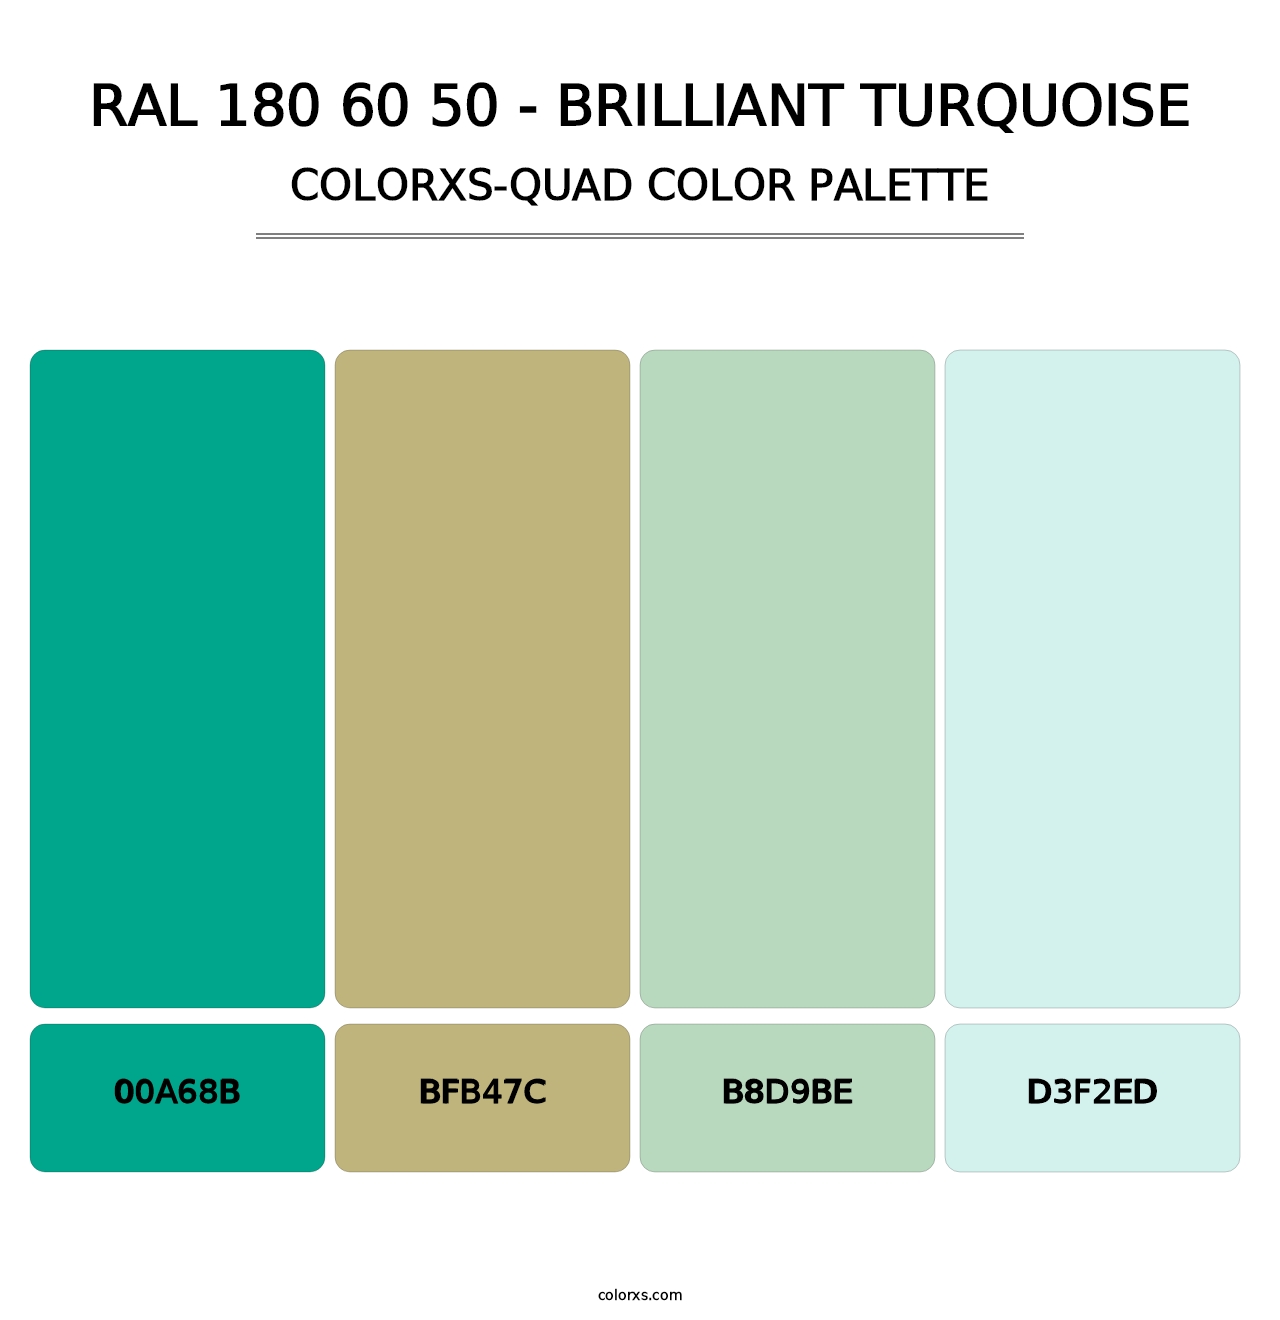 RAL 180 60 50 - Brilliant Turquoise - Colorxs Quad Palette